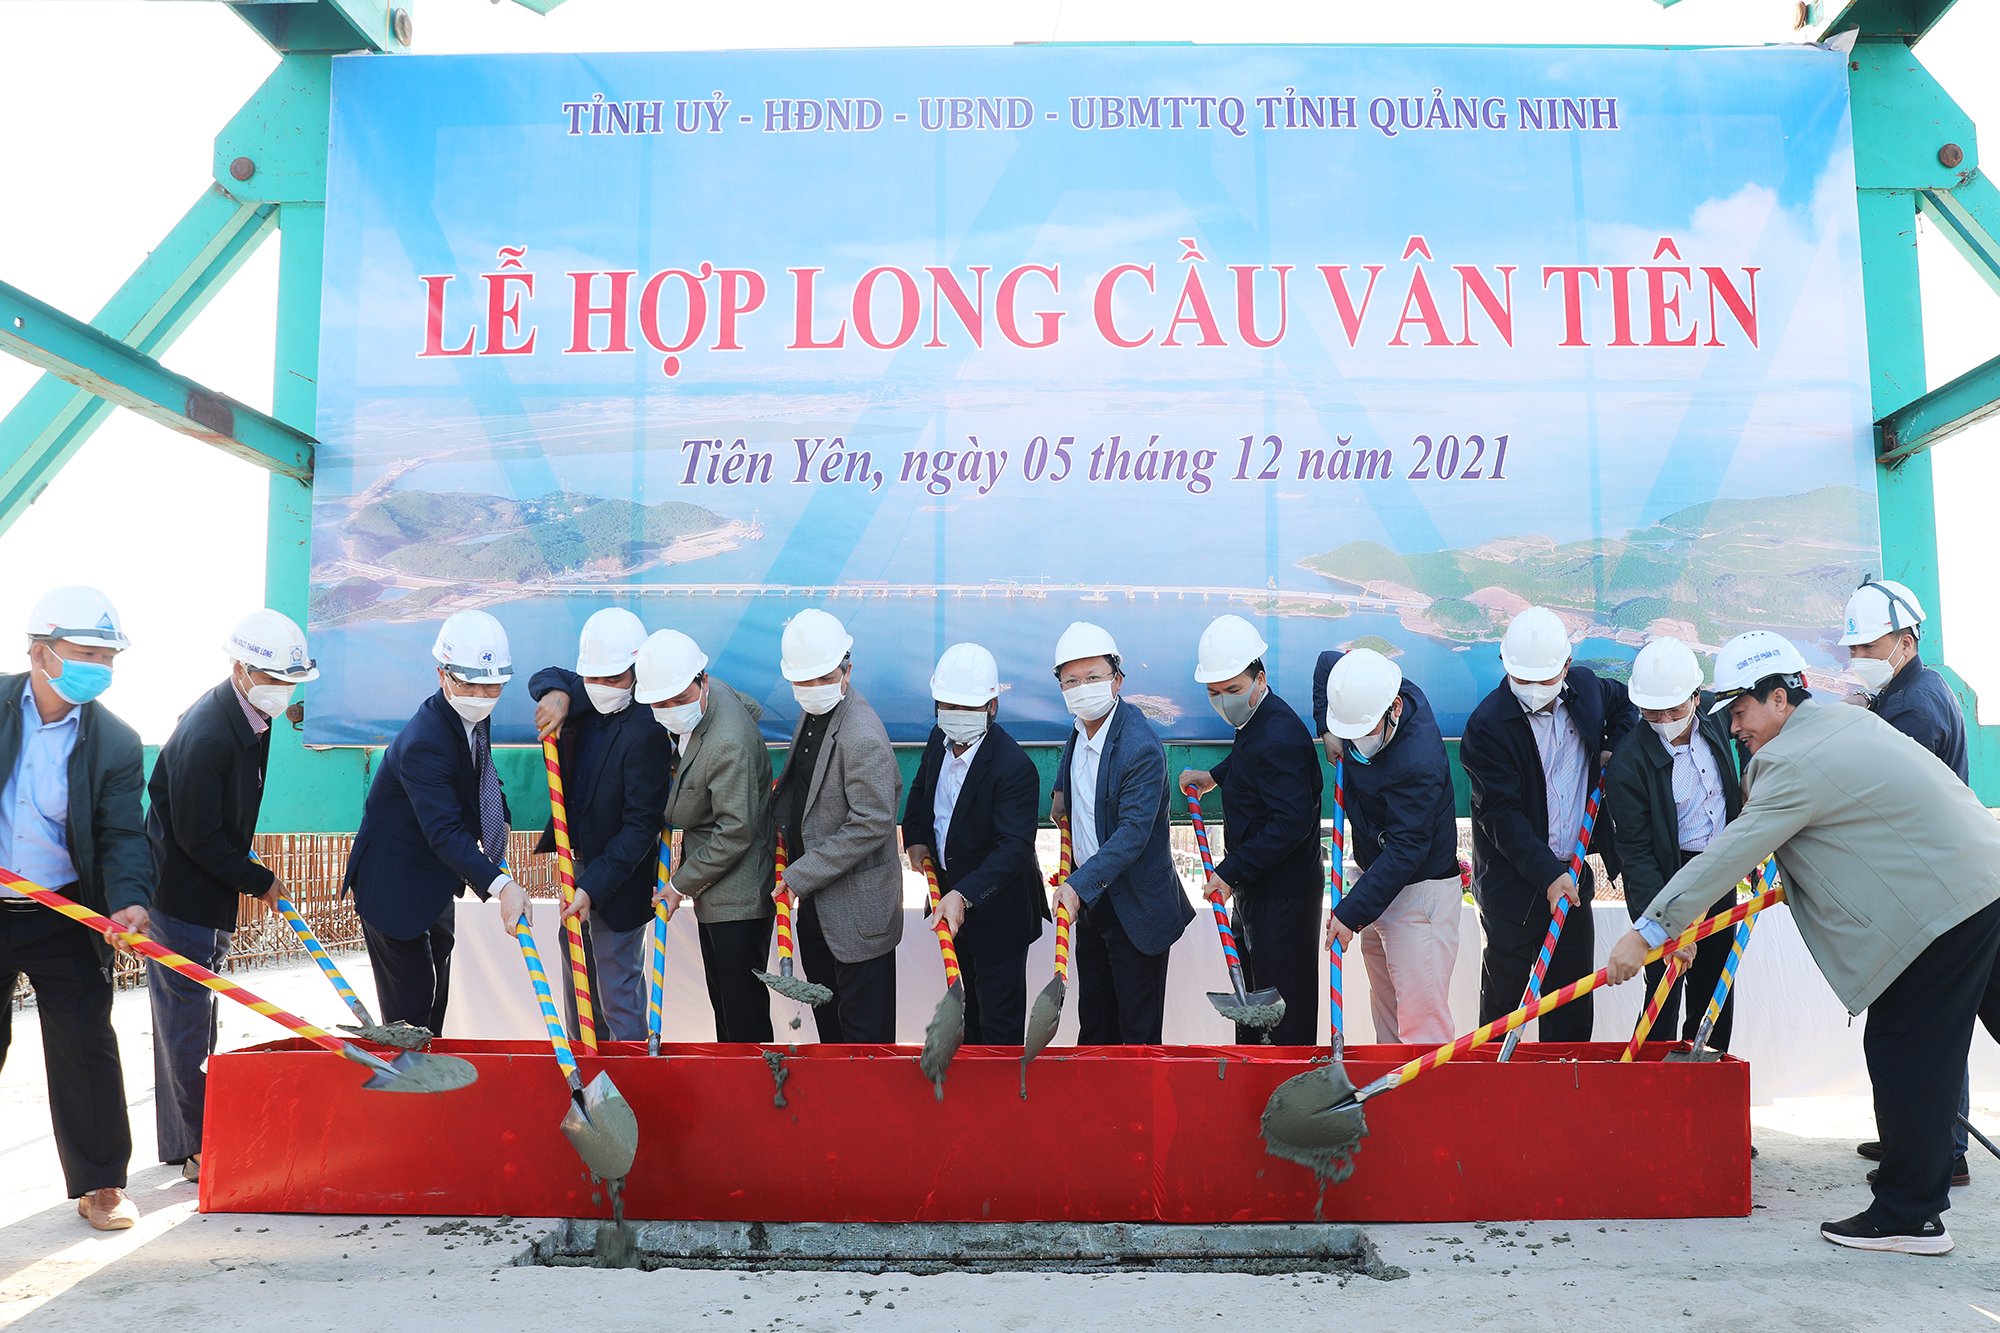 Hợp long cầu vượt biển dài nhất tỉnh Quảng Ninh - Ảnh 1.